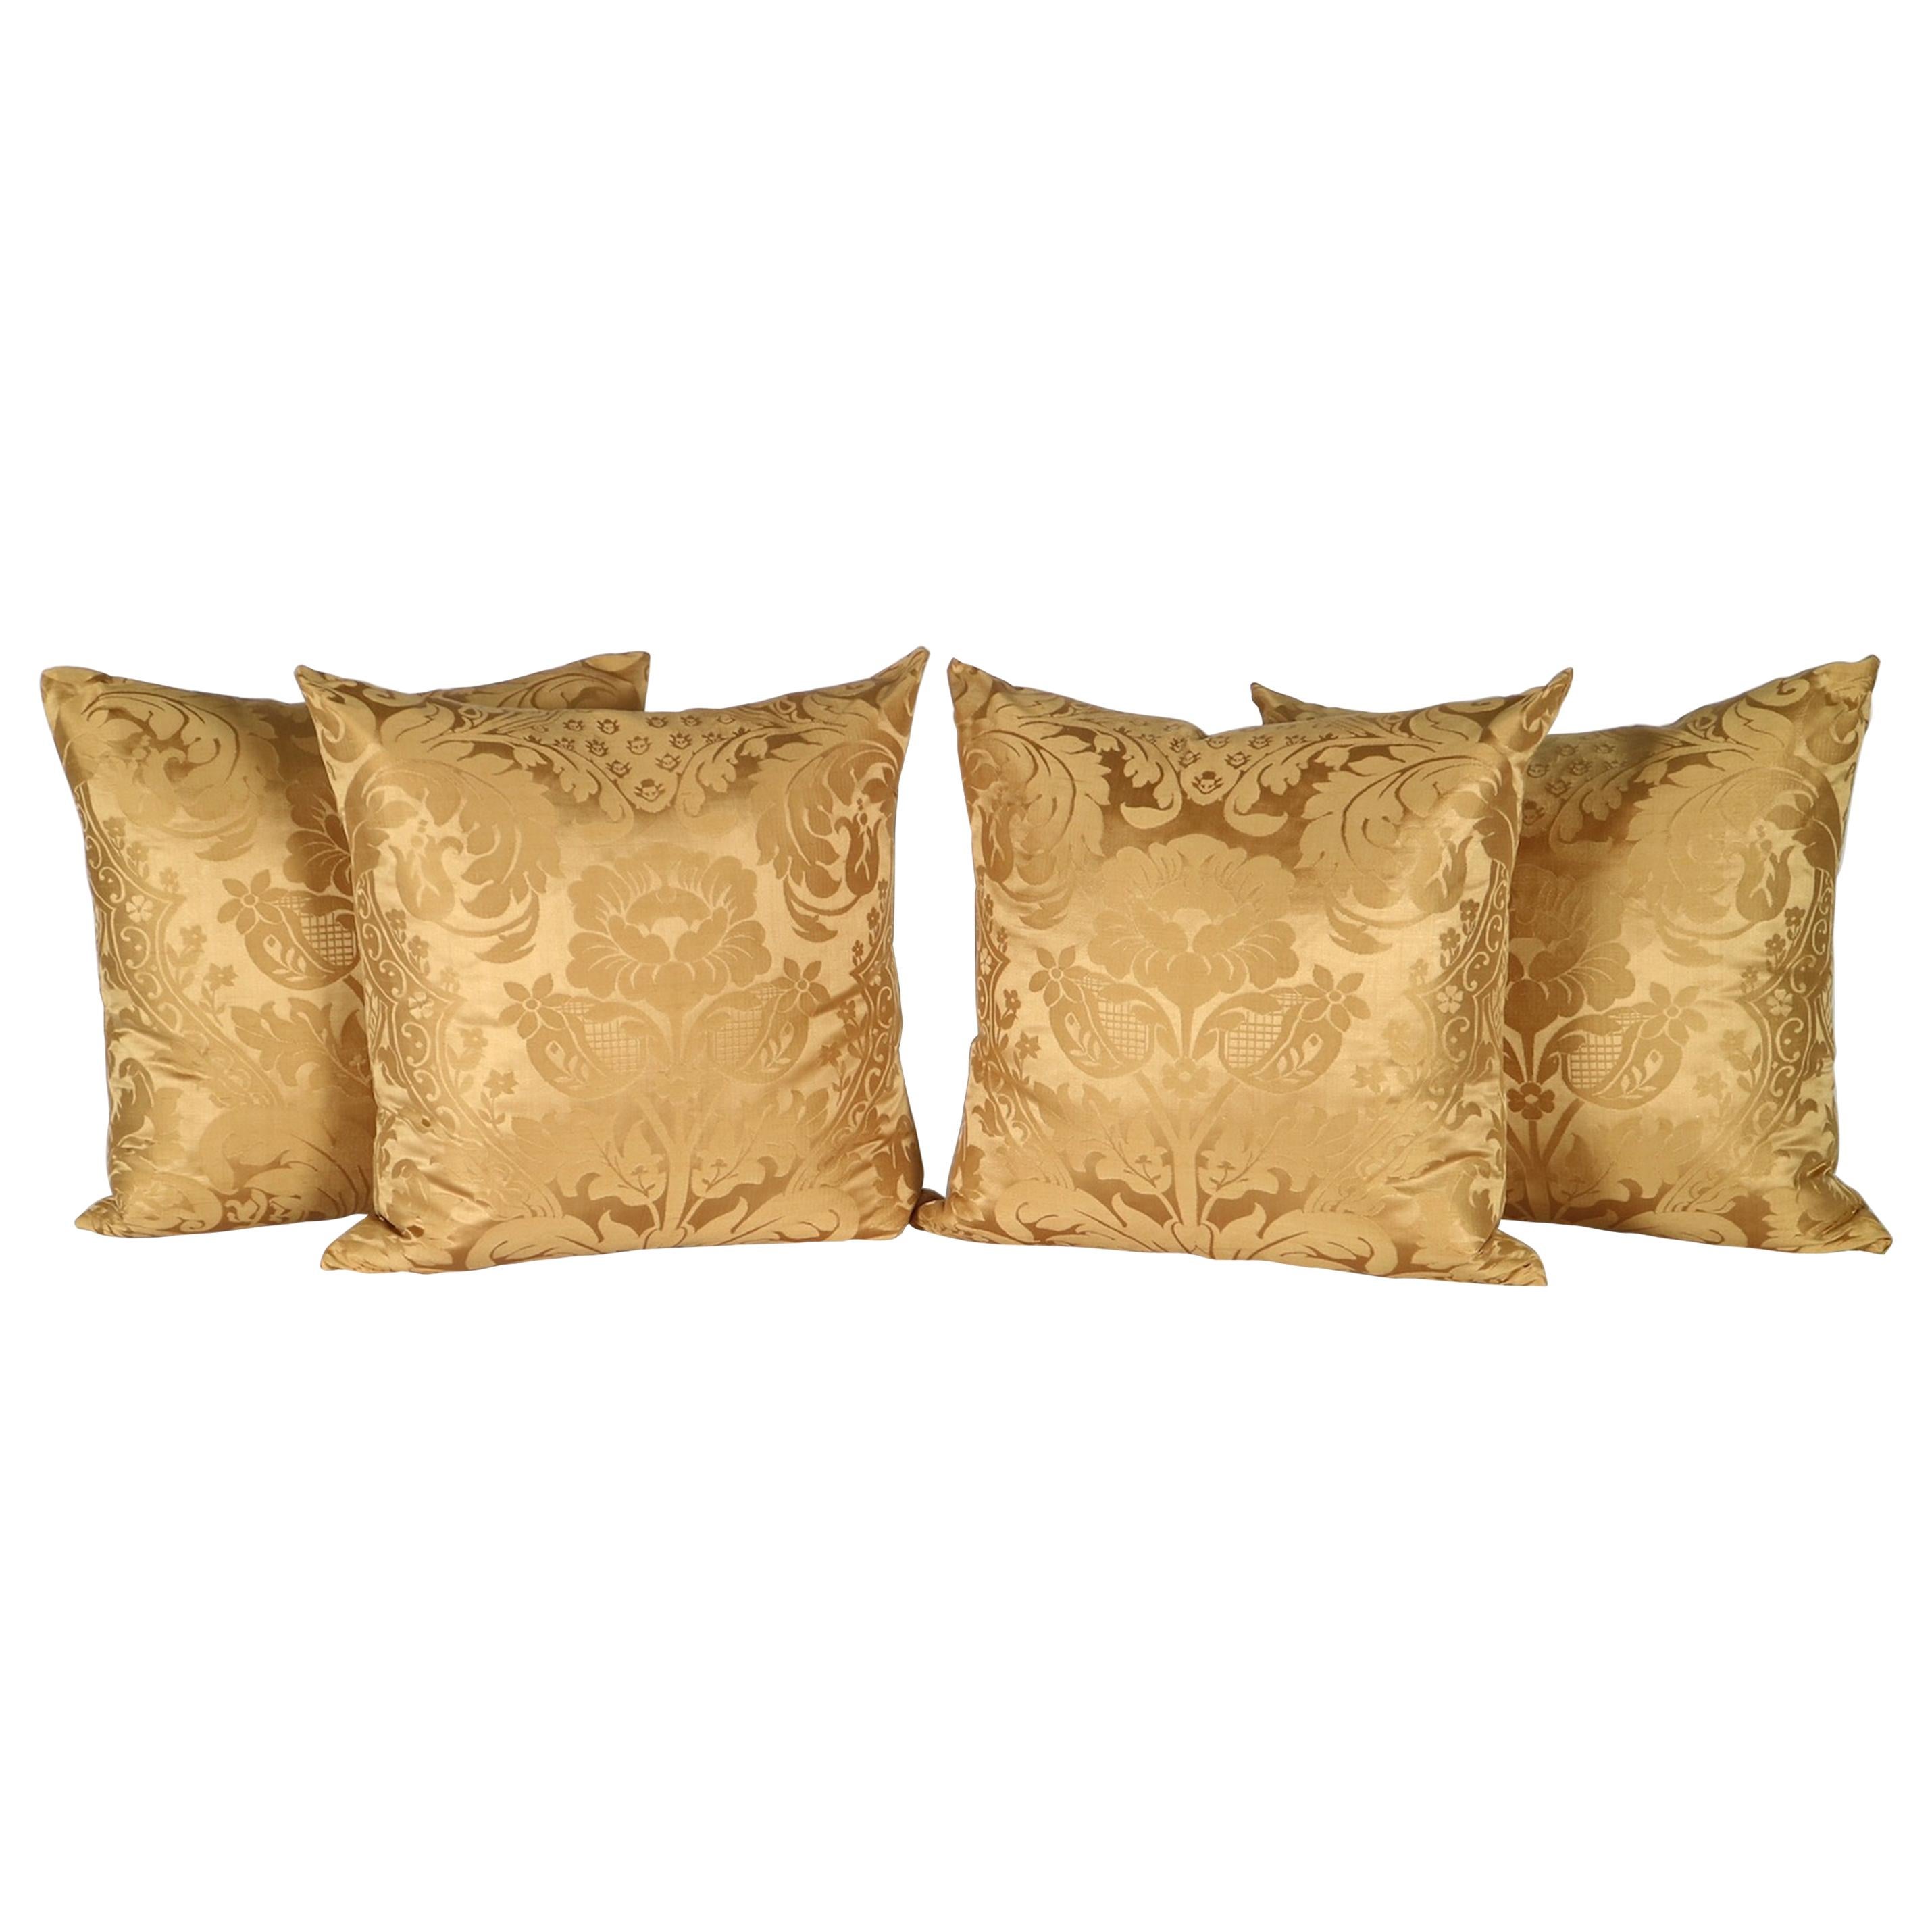 Antique Pillows in Golden Silk Damask